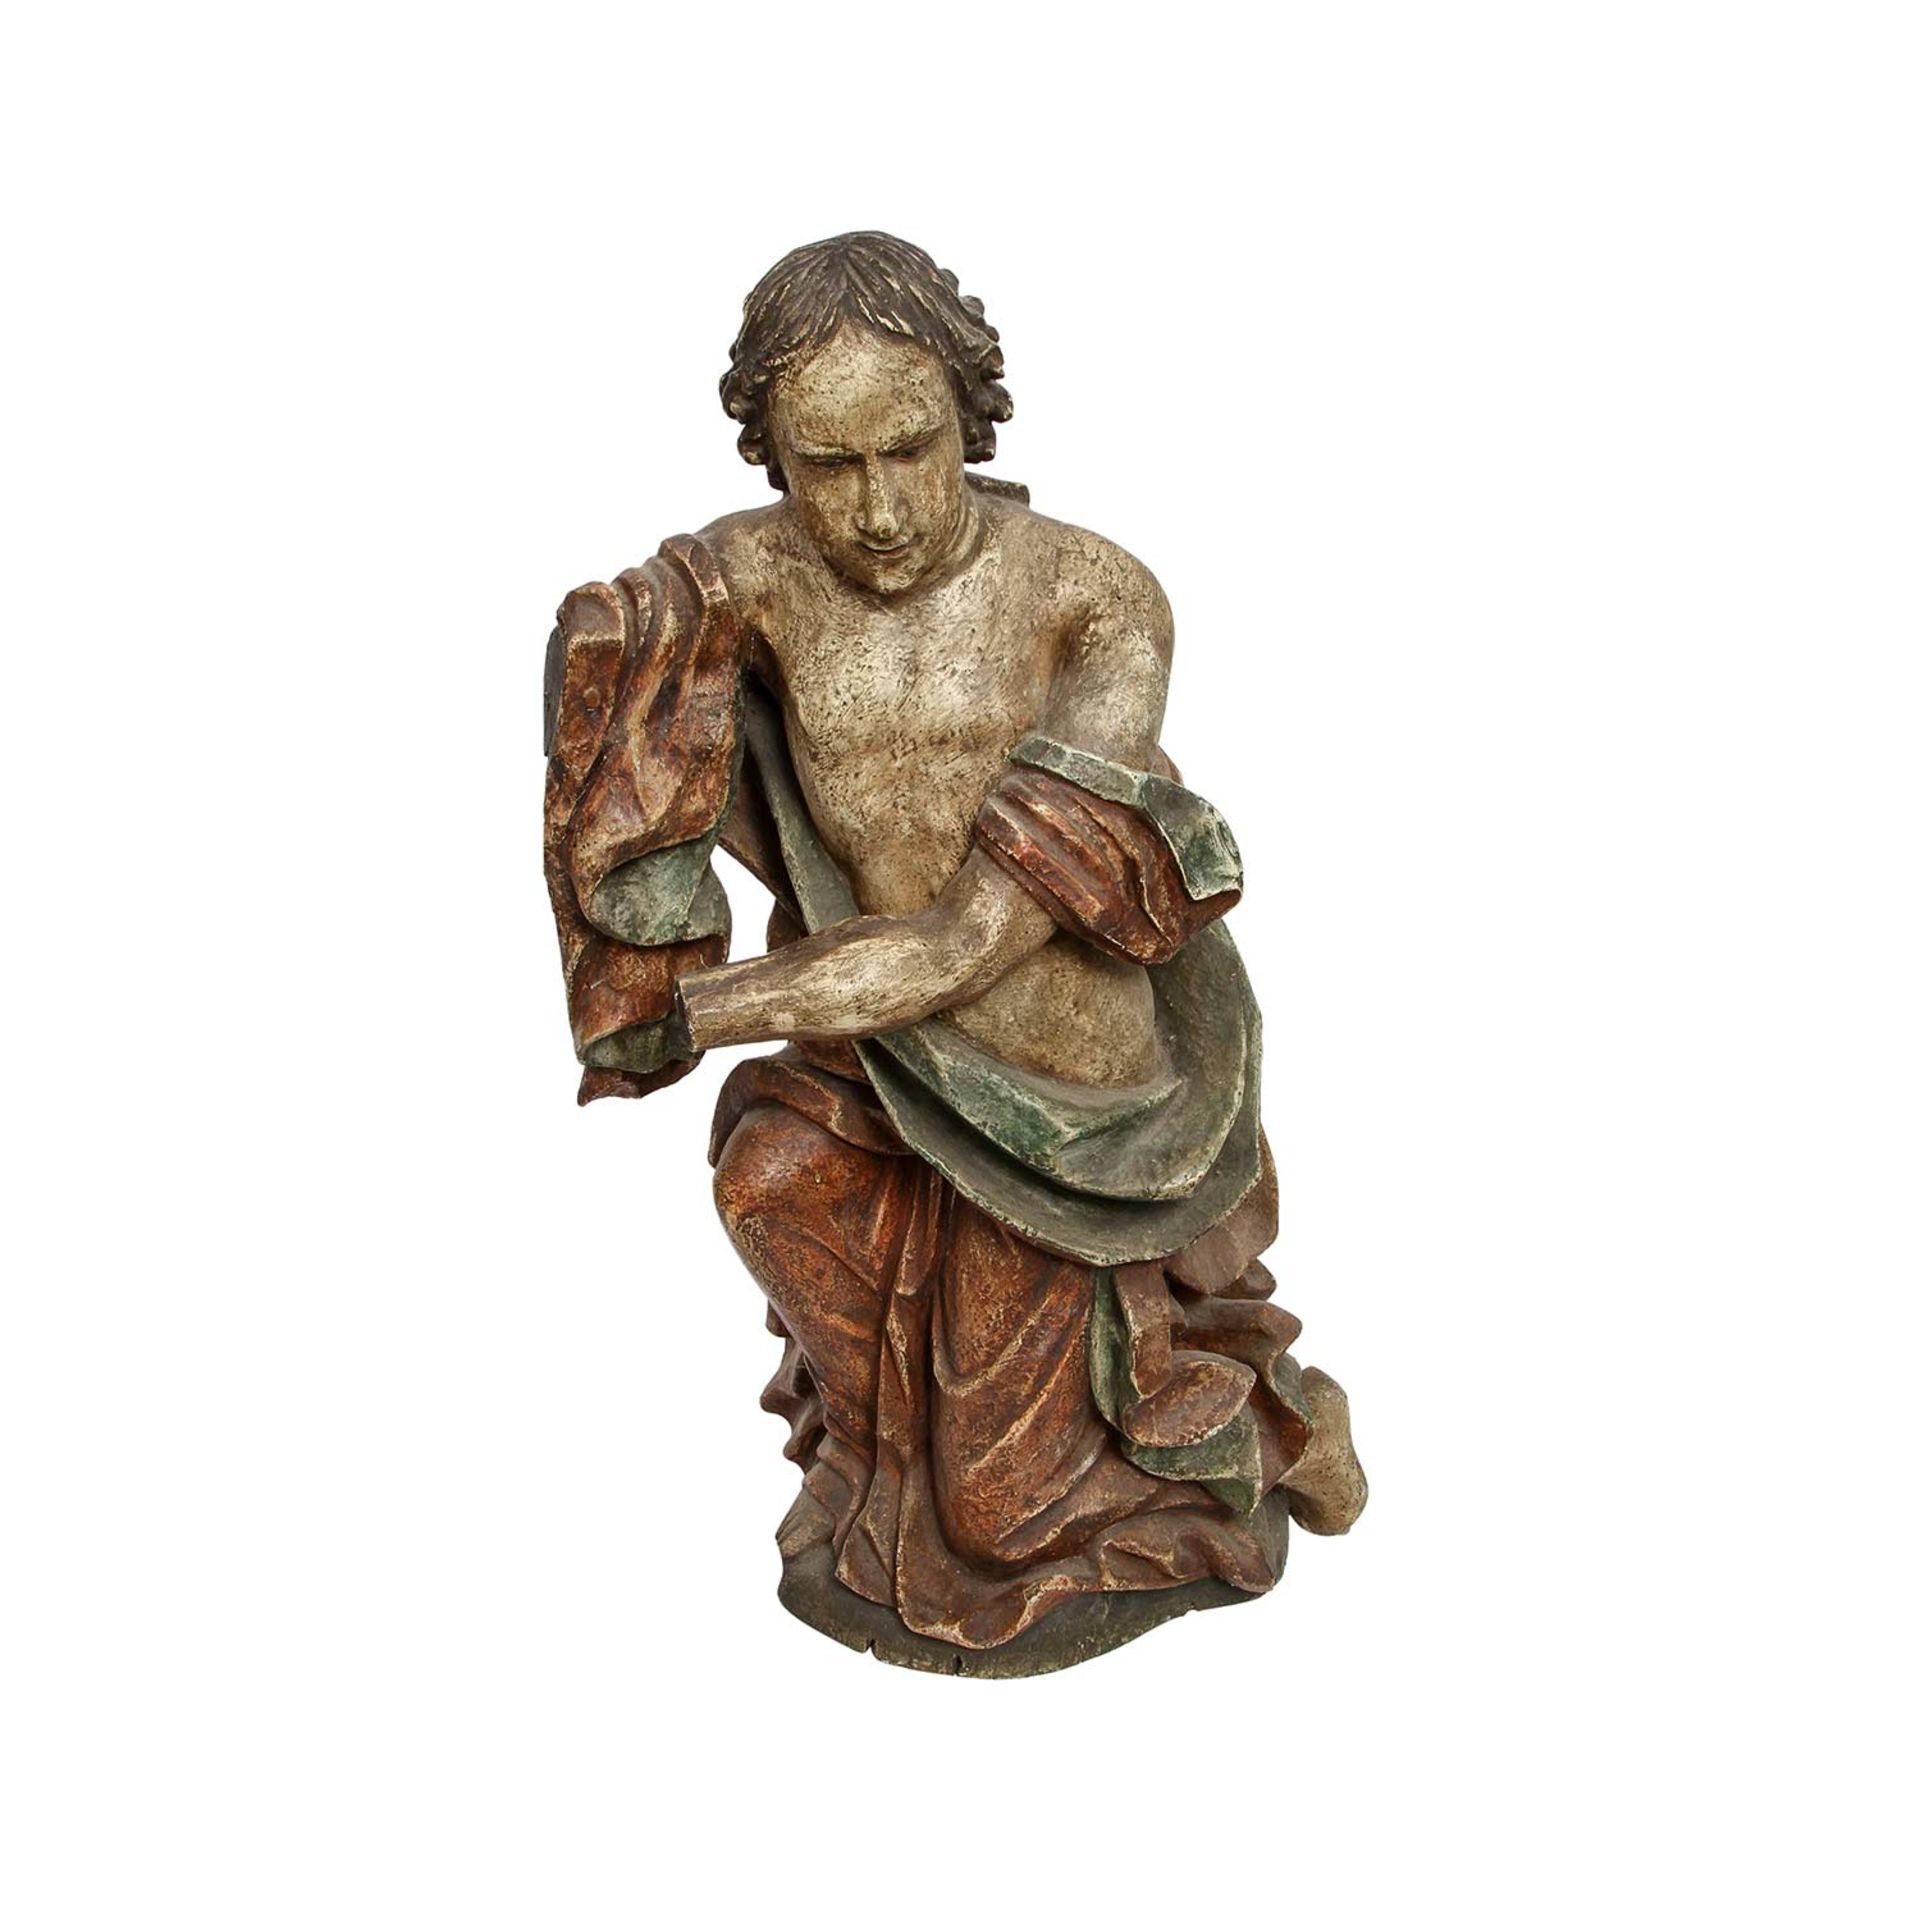 KNIENDER ENGEL 19./20. Jh., in Holz geschnitzt und gefasst, der Engel kniend dargestellt, mit